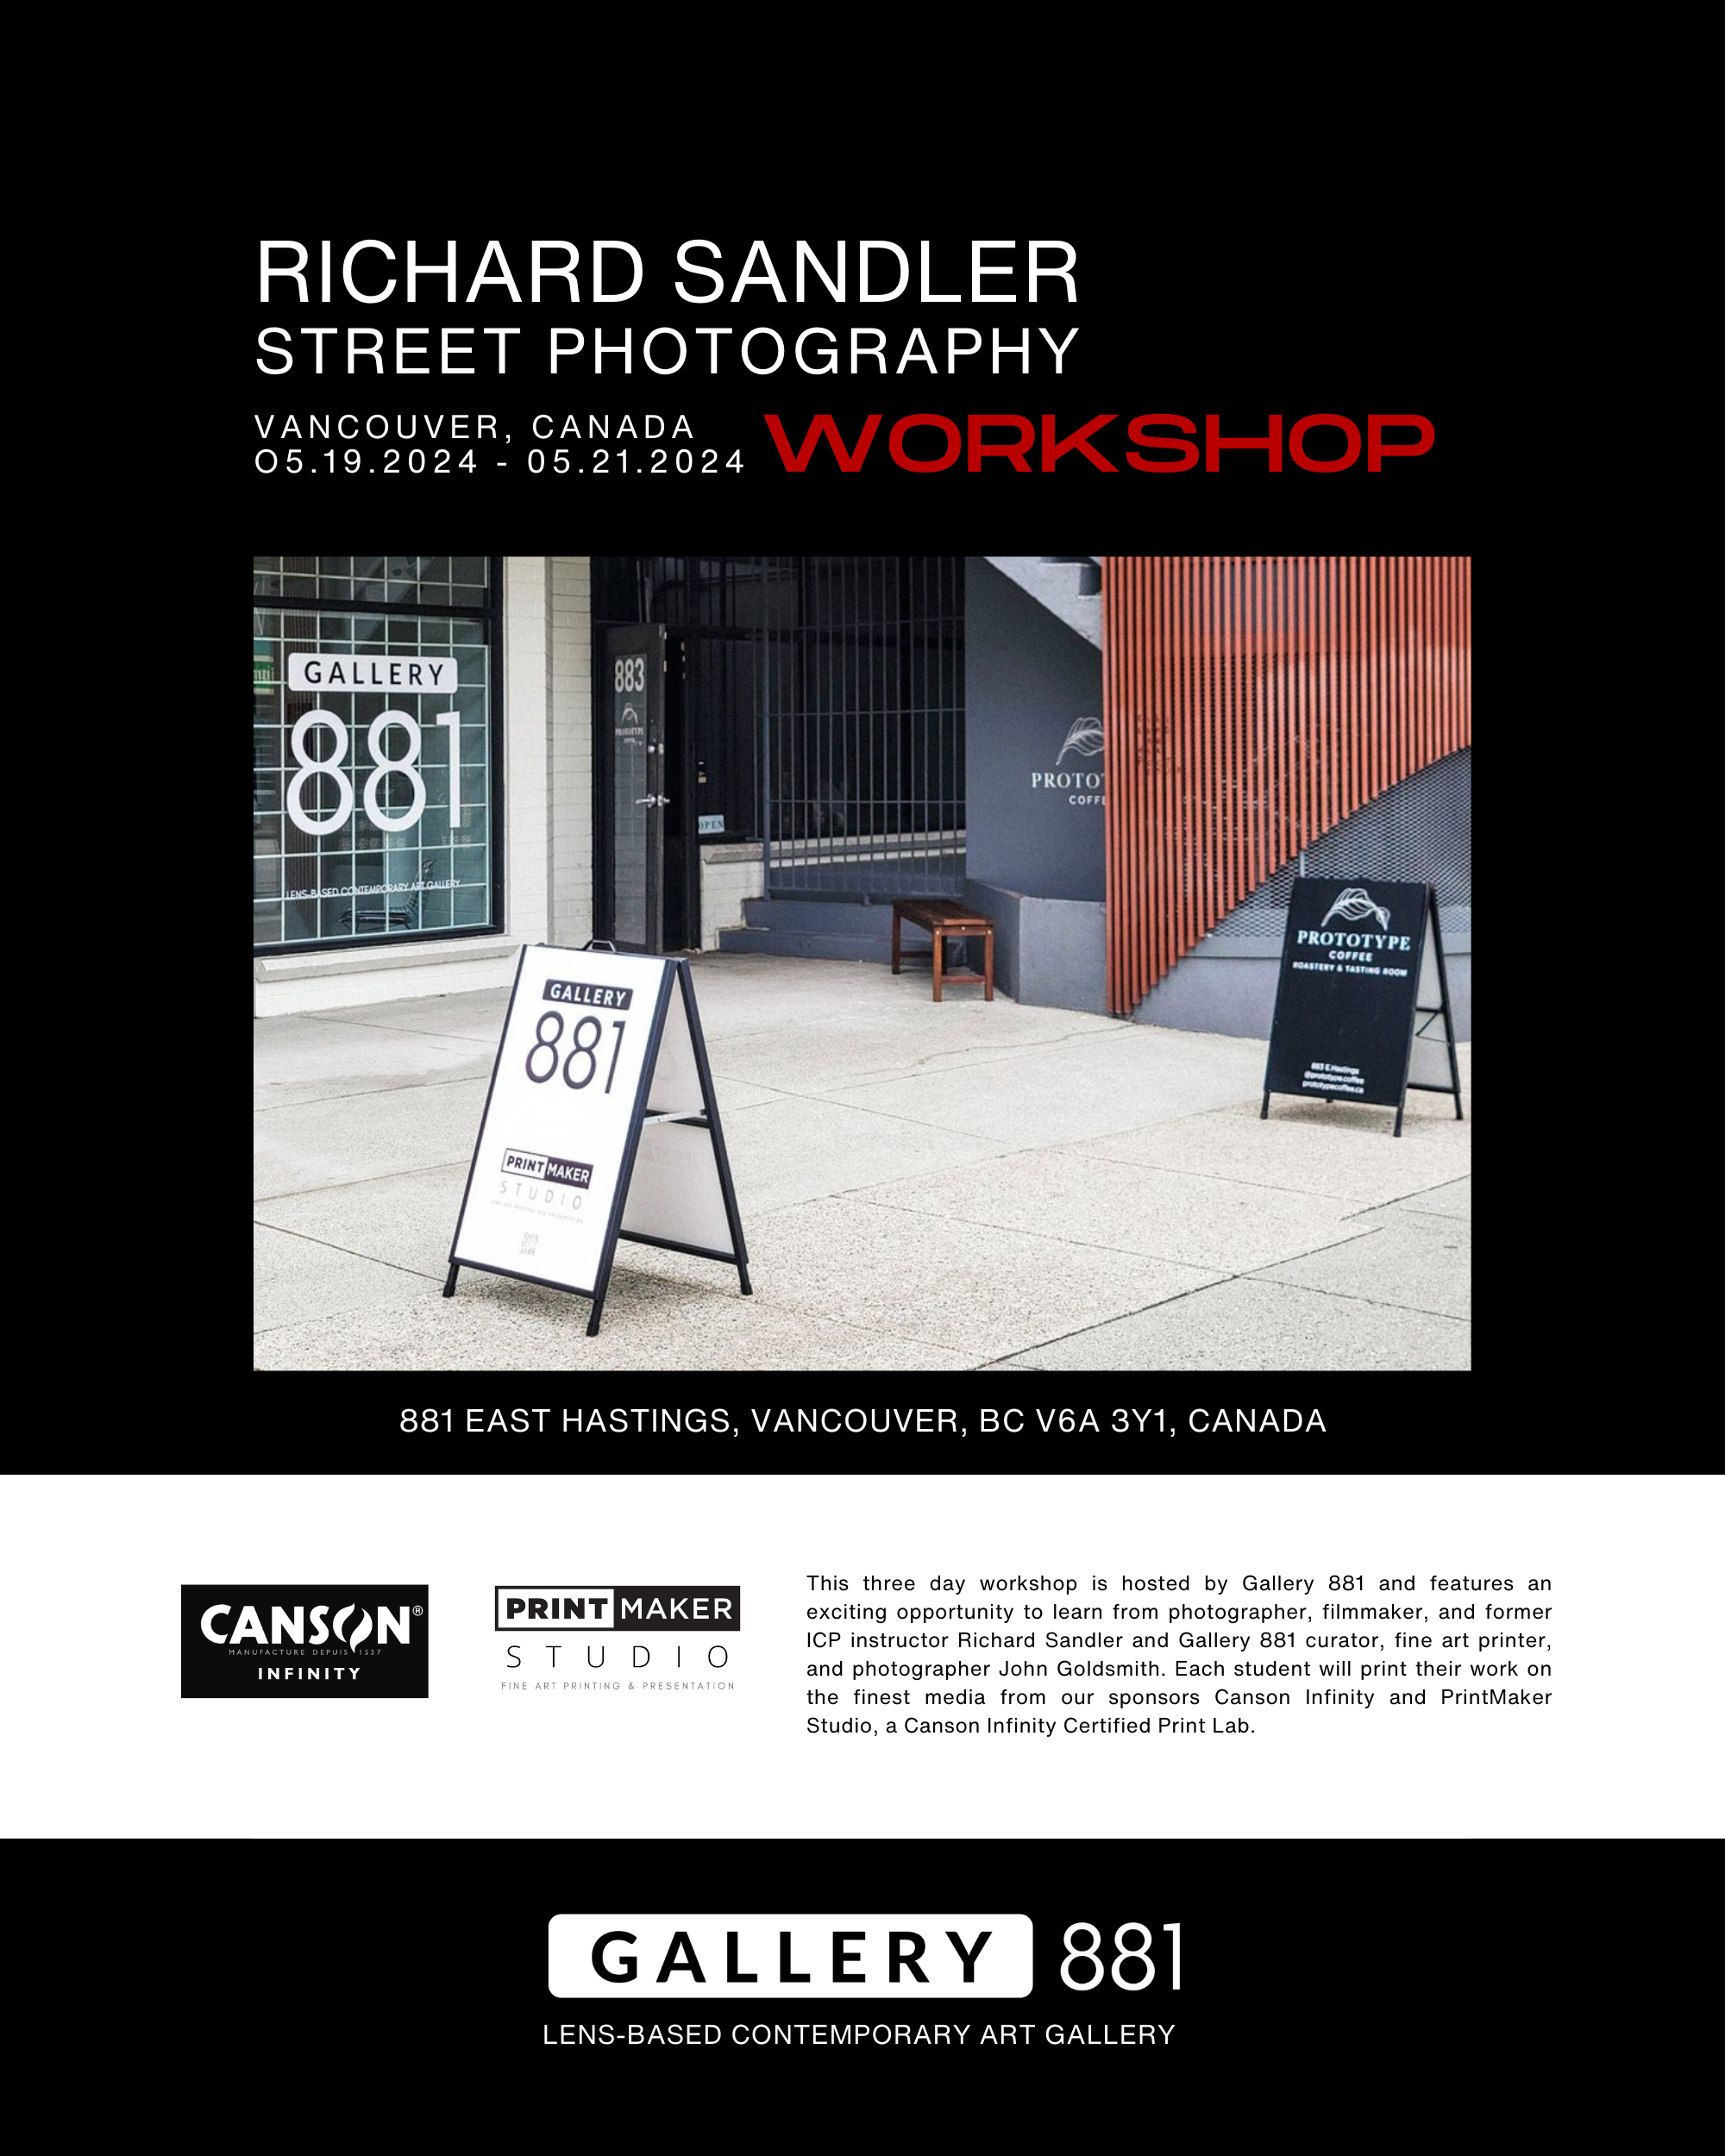 Gallery-881-Richard-Sandler-Workshop-10.png